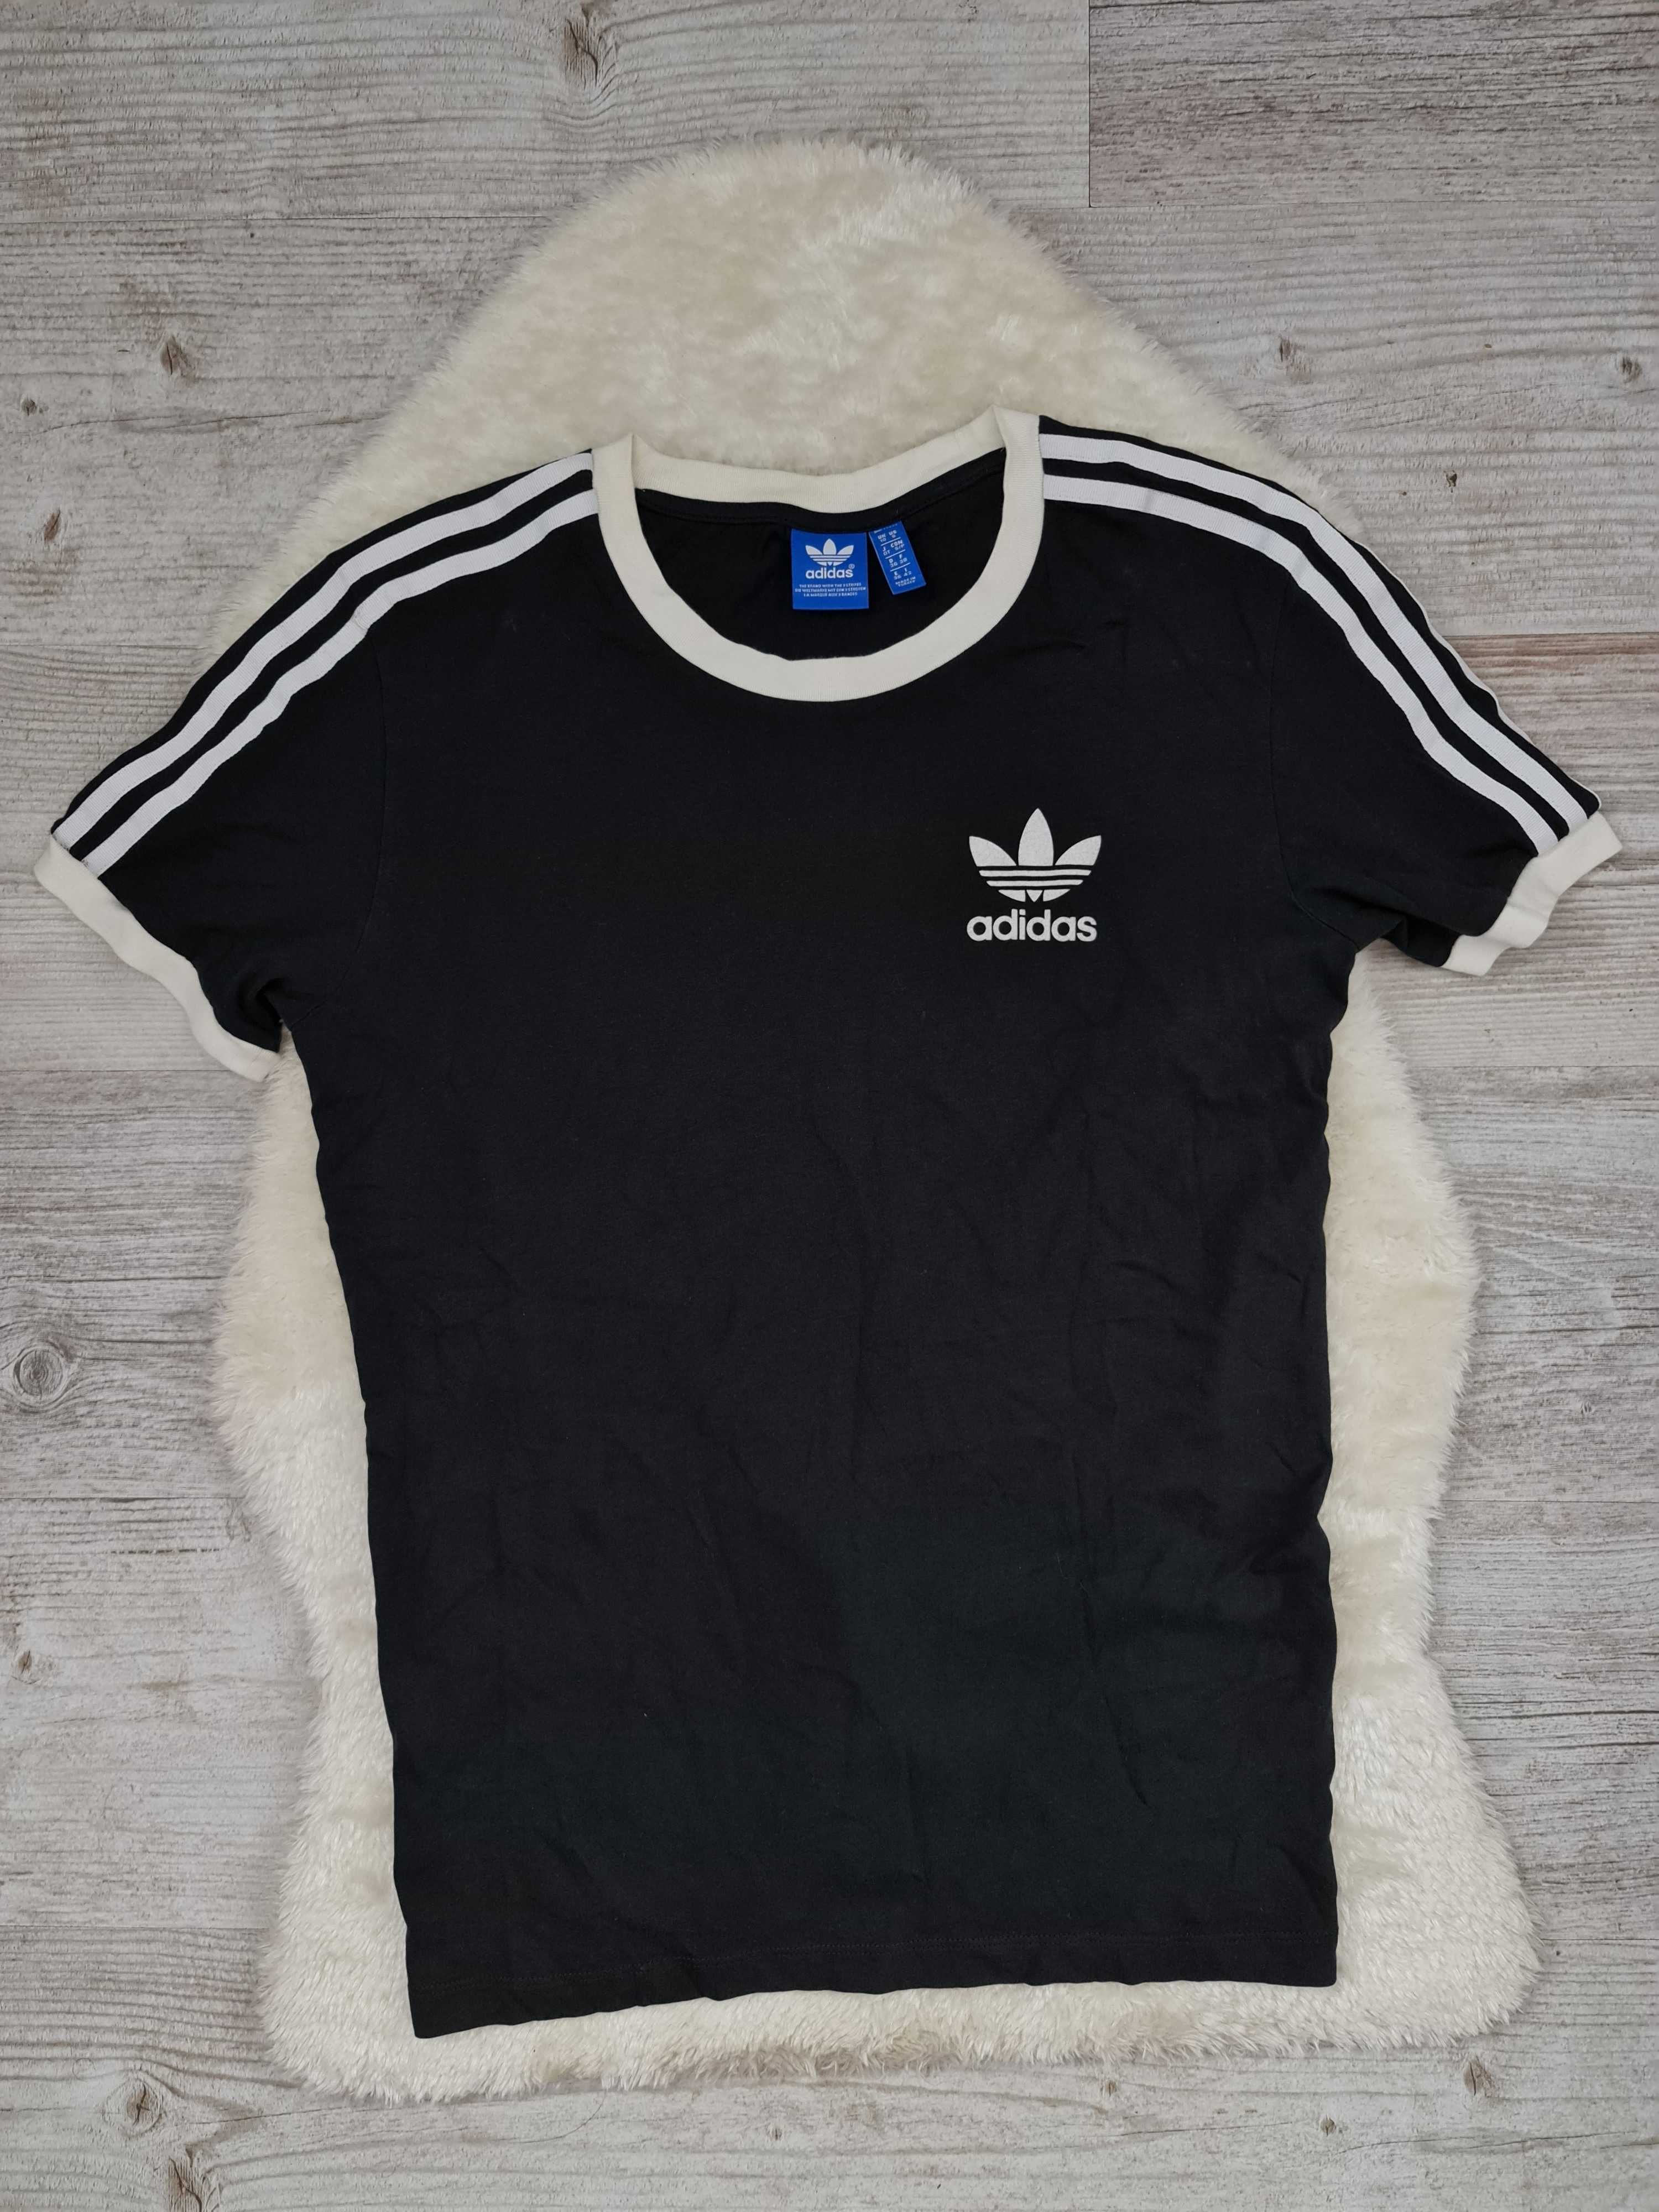 Koszulka T-shirt Adidas Rozmiar S Czarna Oryginalna trio 3 Paski